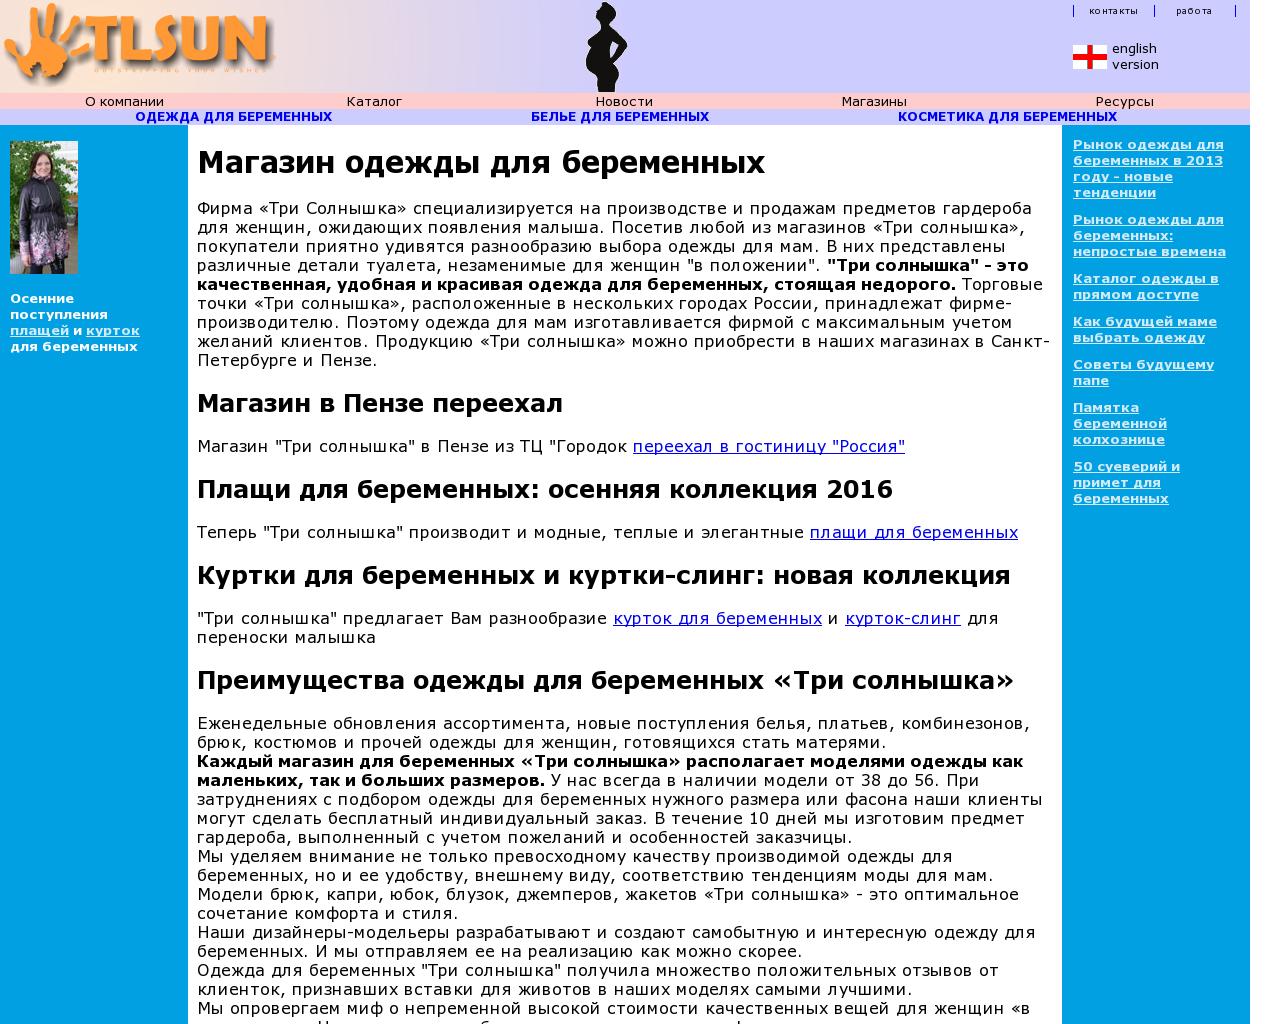 Изображение сайта tlsun.ru в разрешении 1280x1024